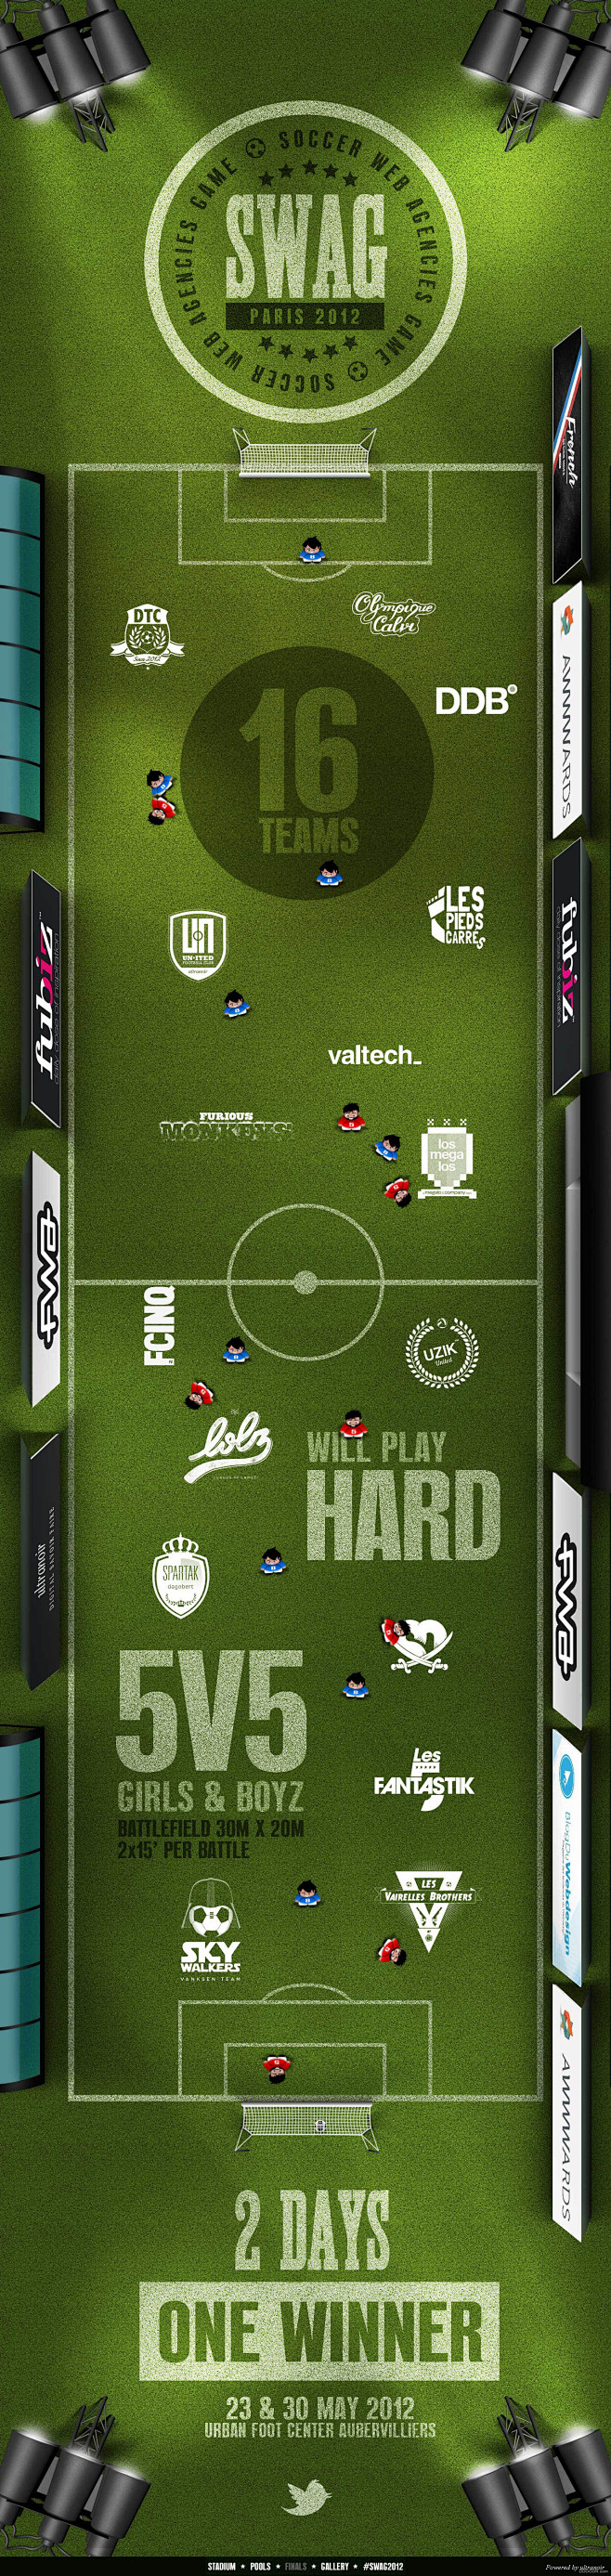 SWAG足球游戏网页设计-网页设计